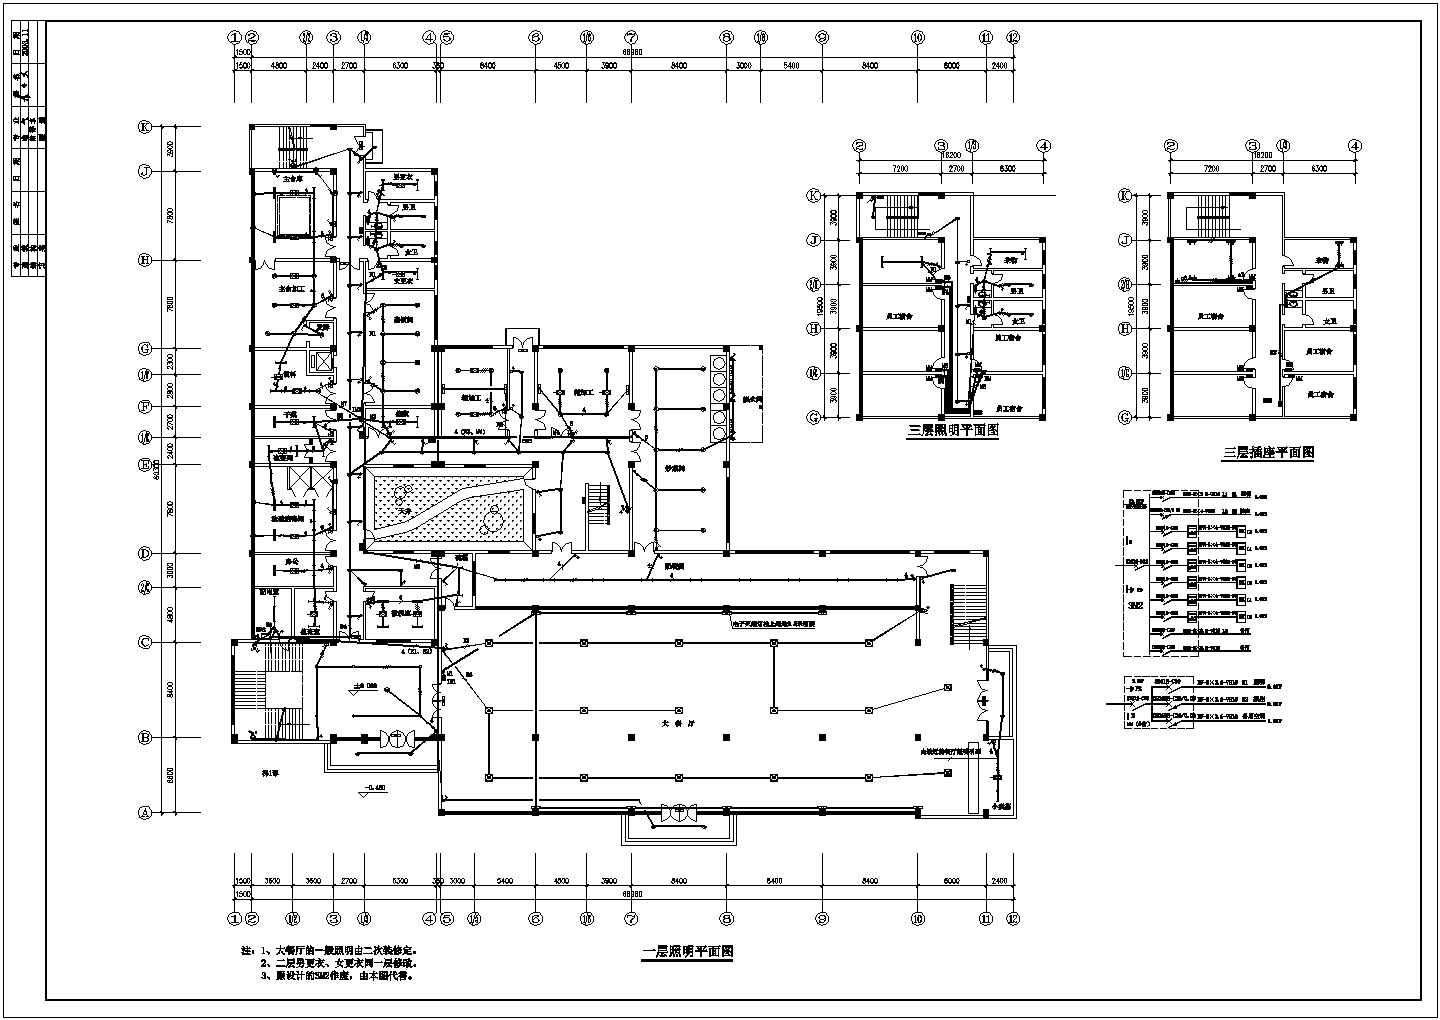 河北某重点大学学生食堂电气设计CAD施工图